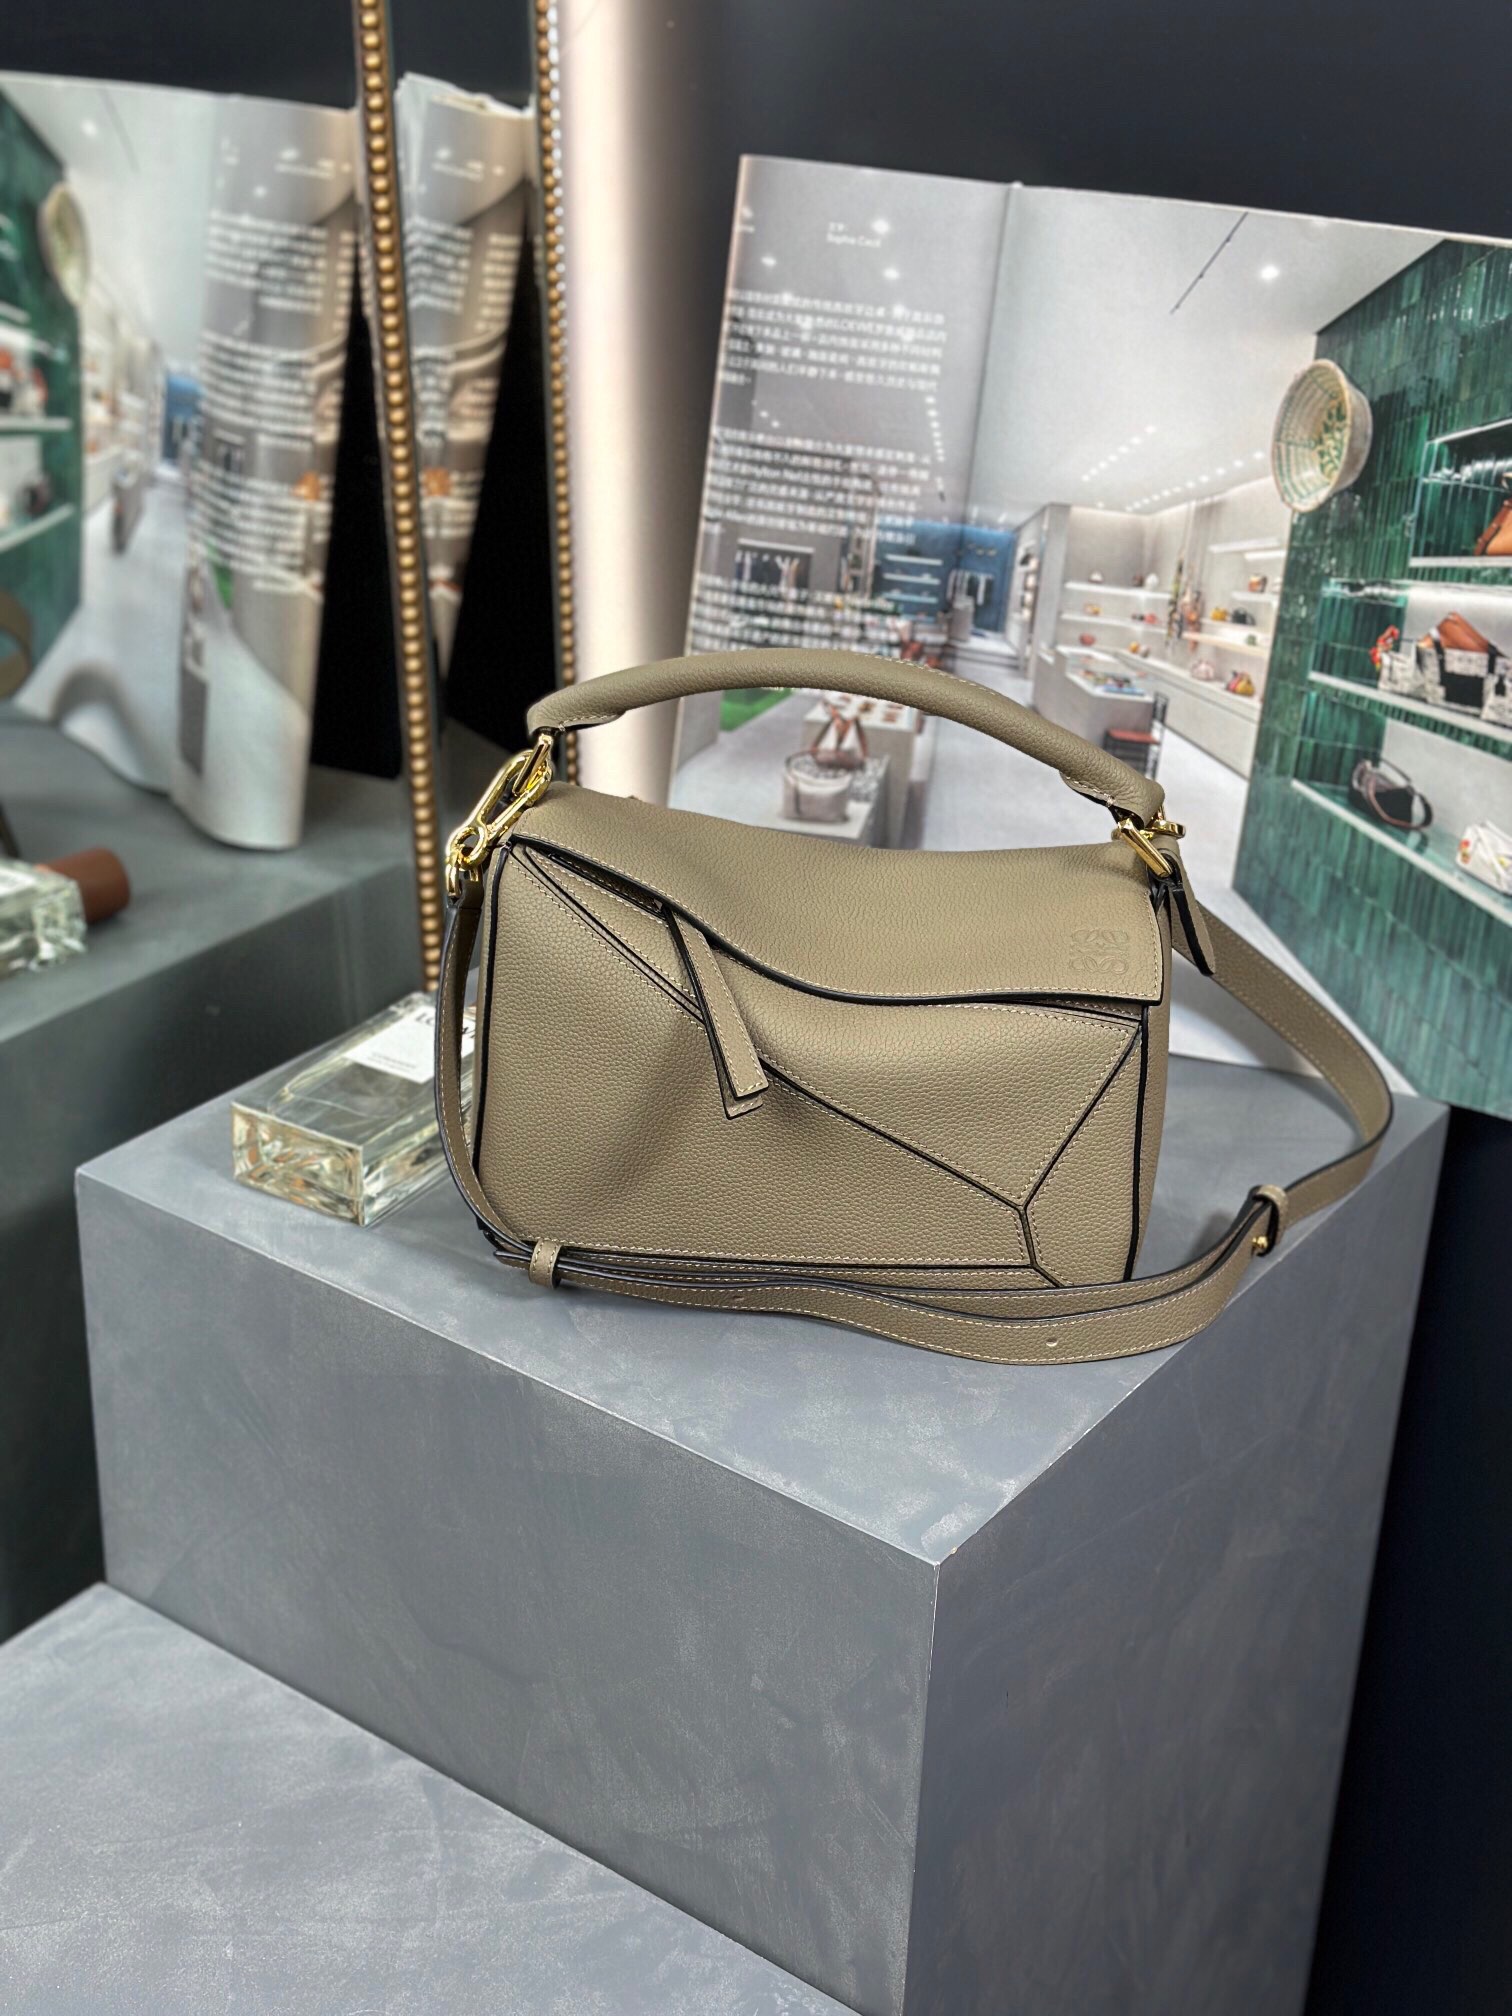 Top brands like
 Loewe Bags Handbags Green Cowhide